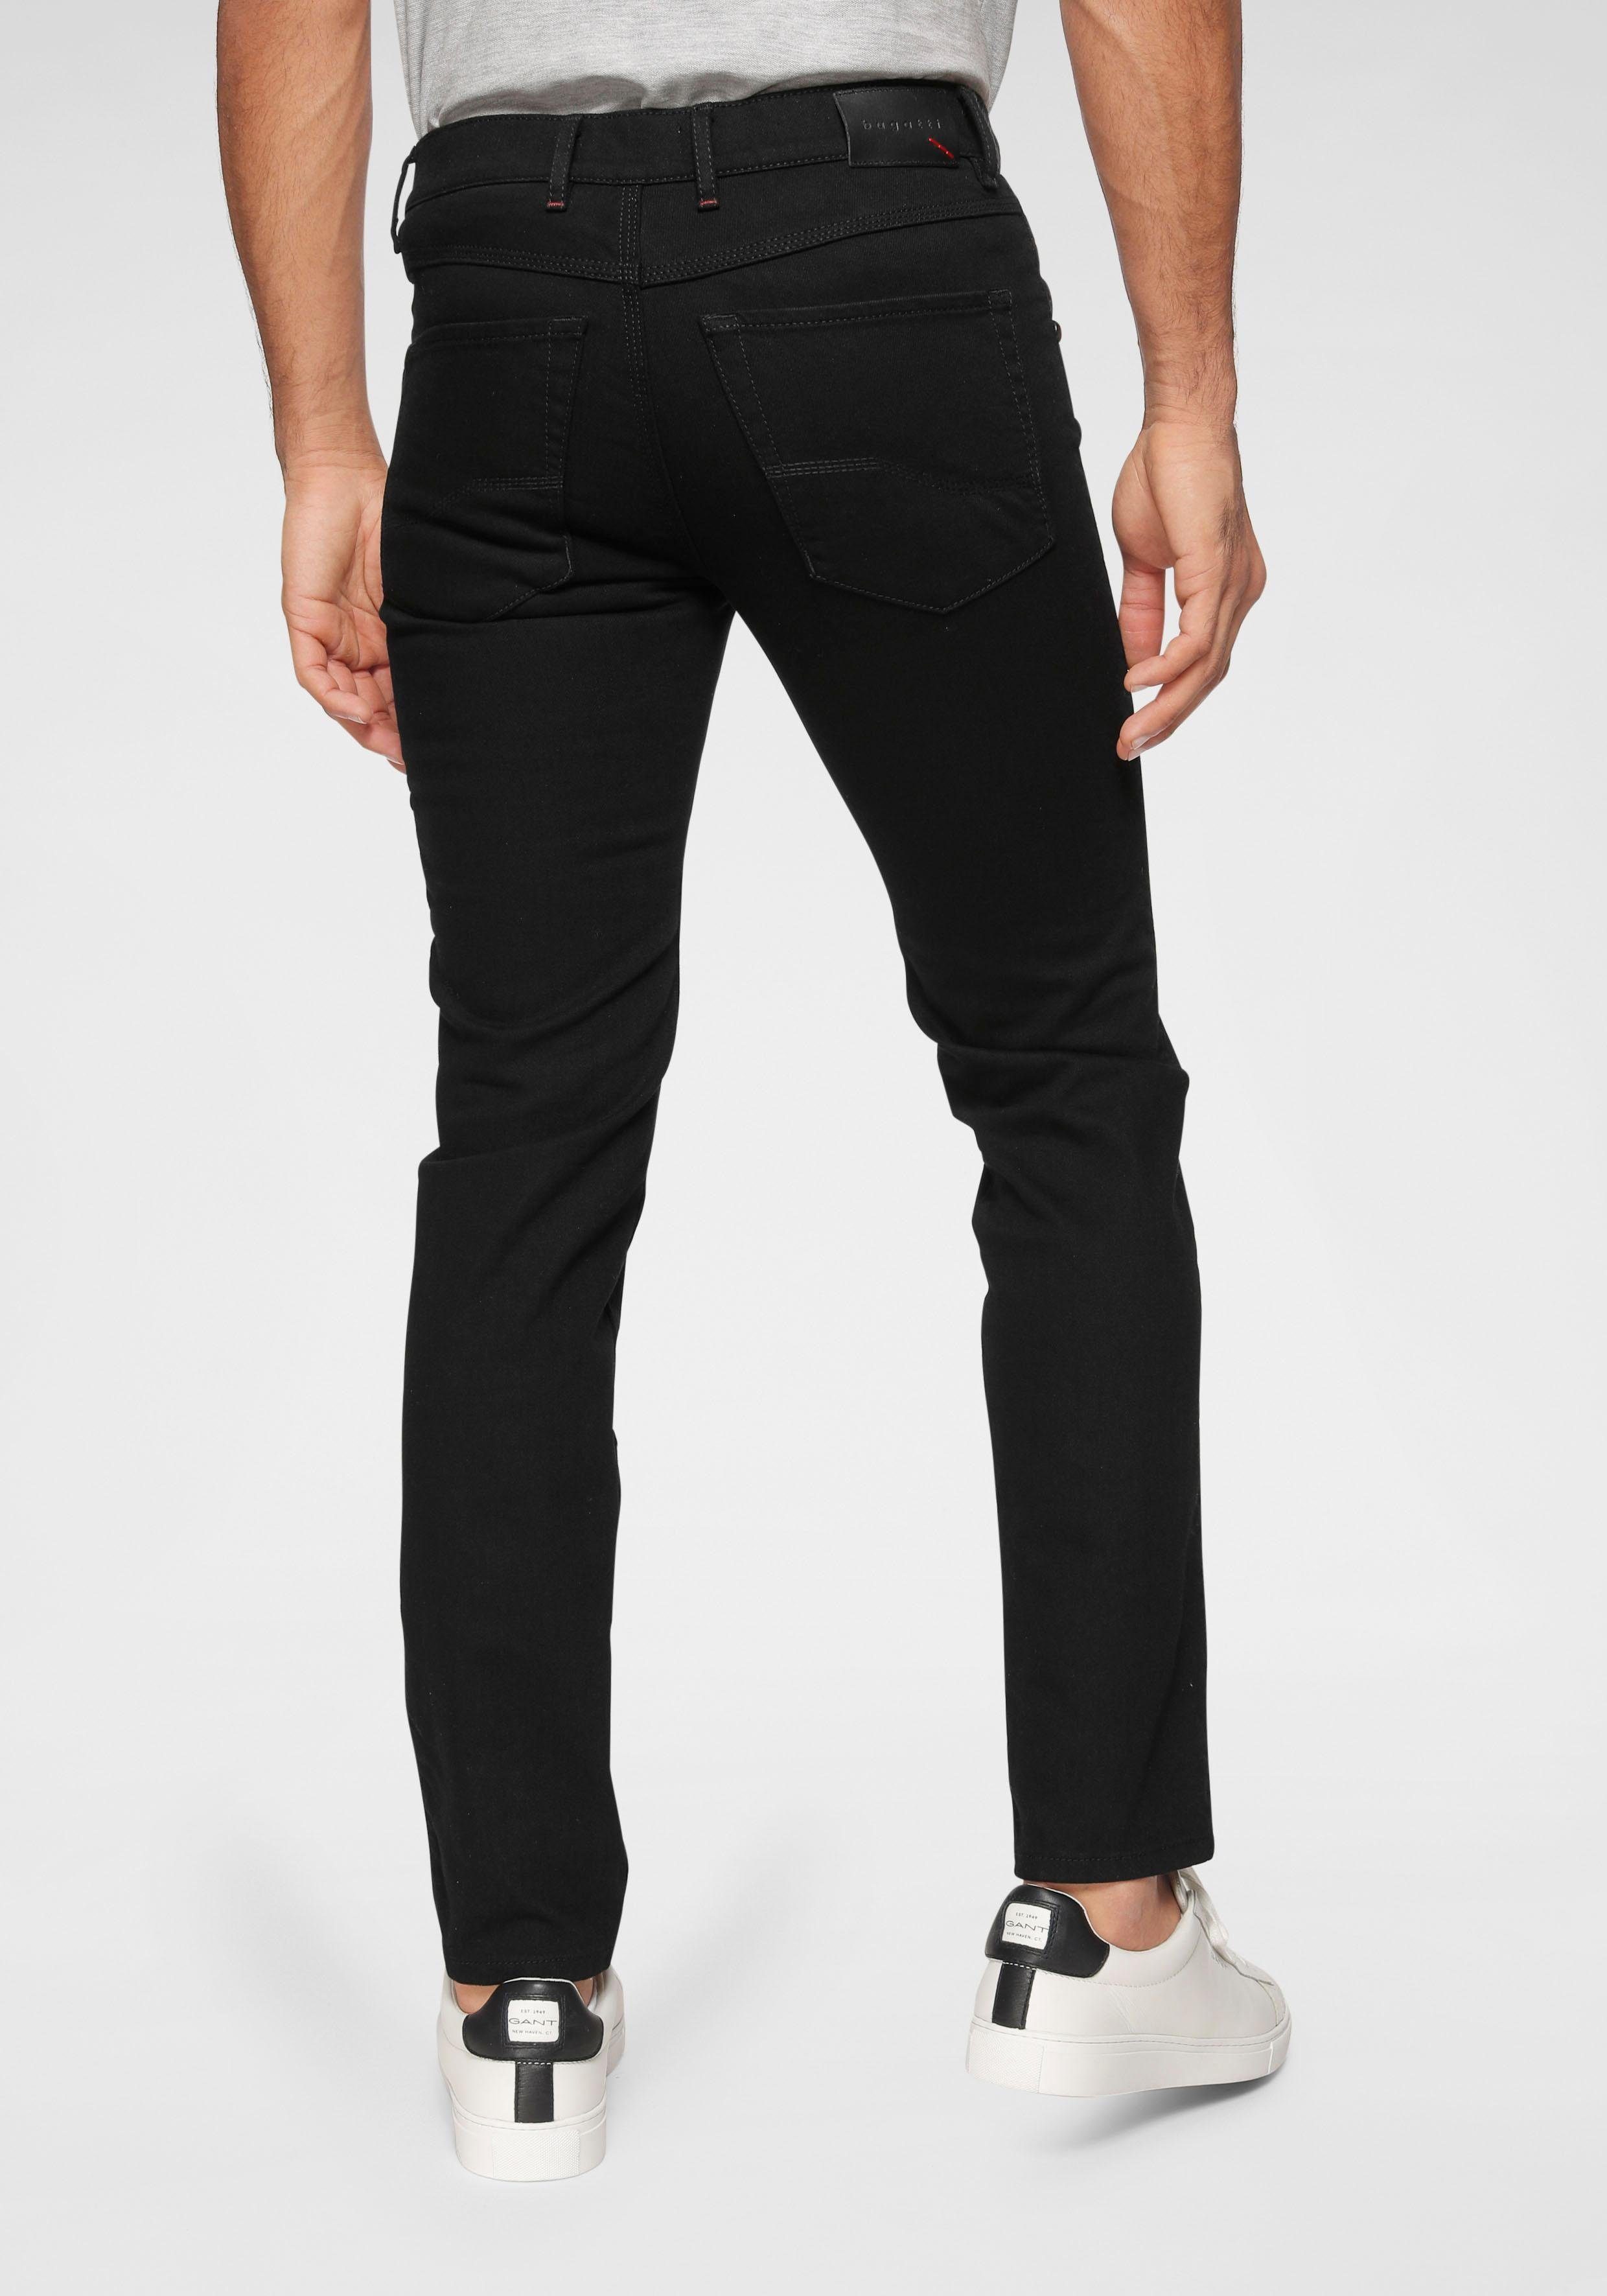 bugatti sich Bewegung an Flexcity Regular-fit-Jeans passt black32 der